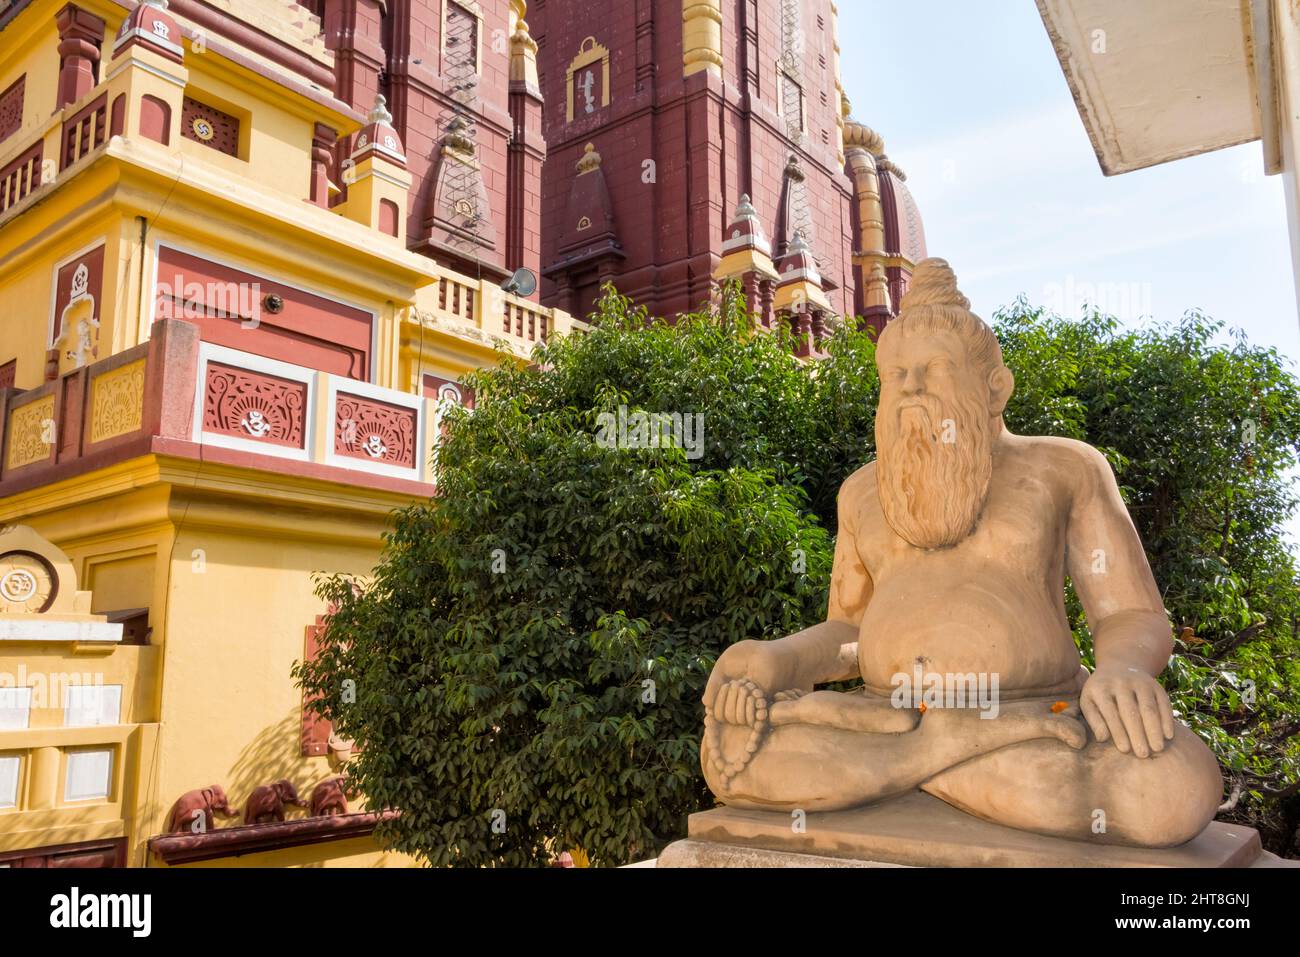 Statue en pierre à l'extérieur du temple Laxminarayan, également connu sous le nom de Birla Mandir, un temple hindou à Delhi, en Inde Banque D'Images